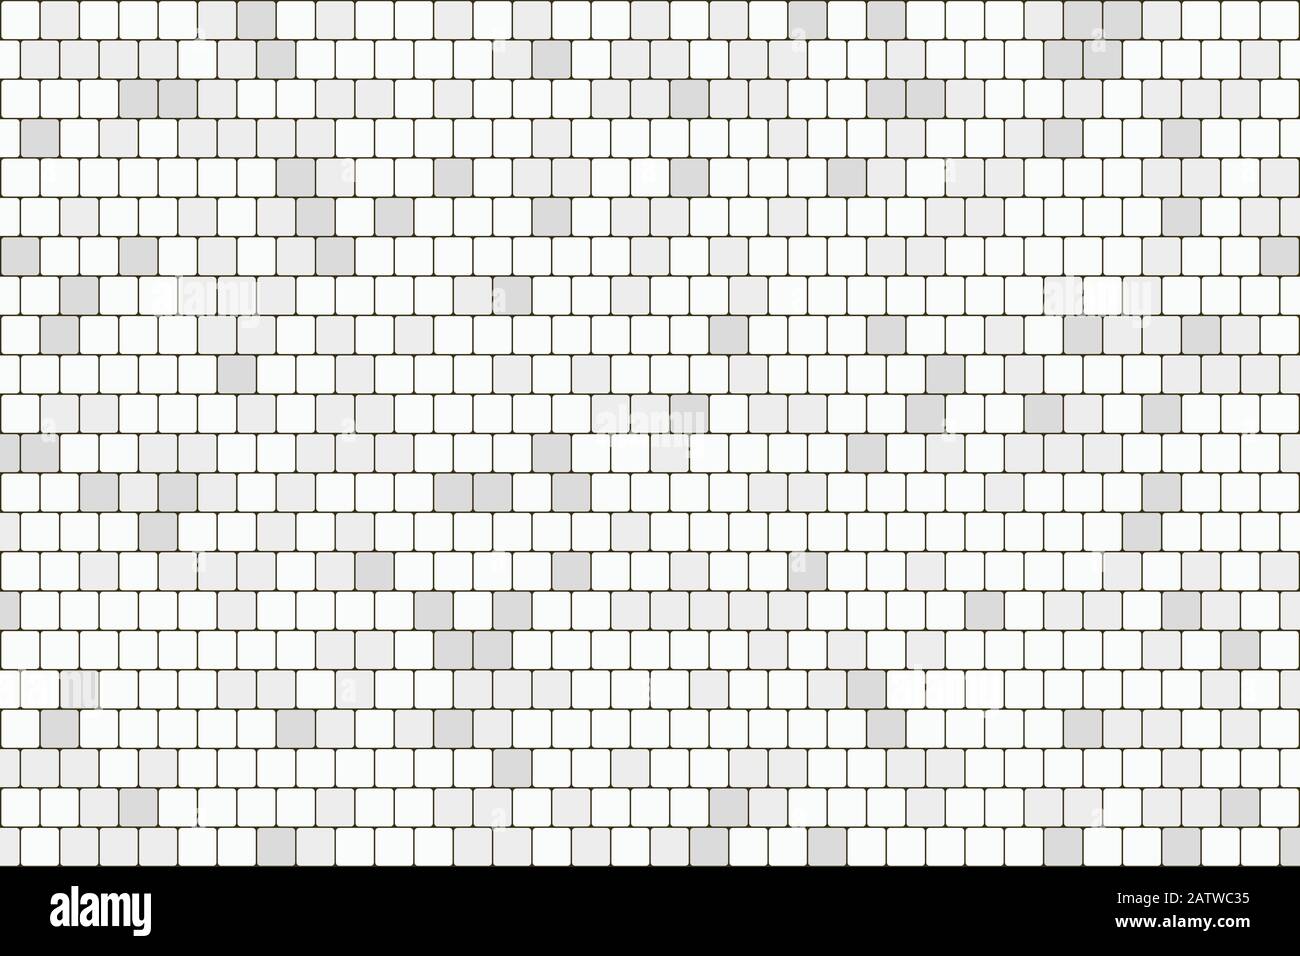 Abstrakter Hintergrund aus weißem und grauem, quadratischem Ziegelstein mit Kunstwerken. Verwendung für Werbung, Poster, Vorlagendesign, Druck, Überschrift. Illustrationsvektor eps10 Stock Vektor